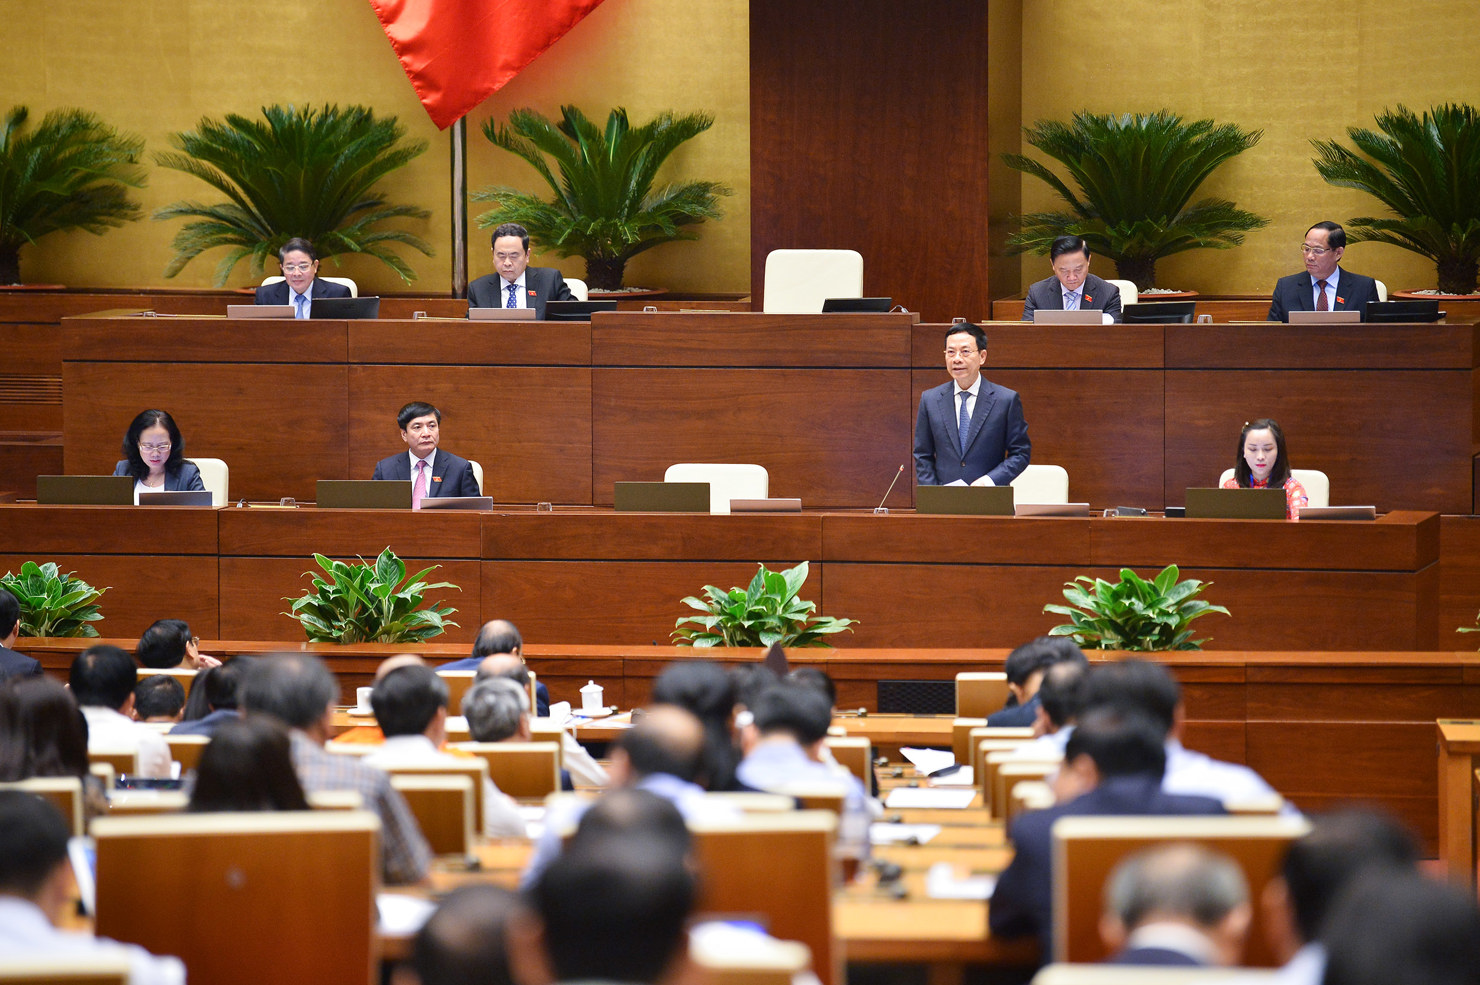 Bộ trưởng Bộ Thông tin và Truyền thông Nguyễn Mạnh Hùng đăng đàn trả lời chất vấn trước Quốc hội.